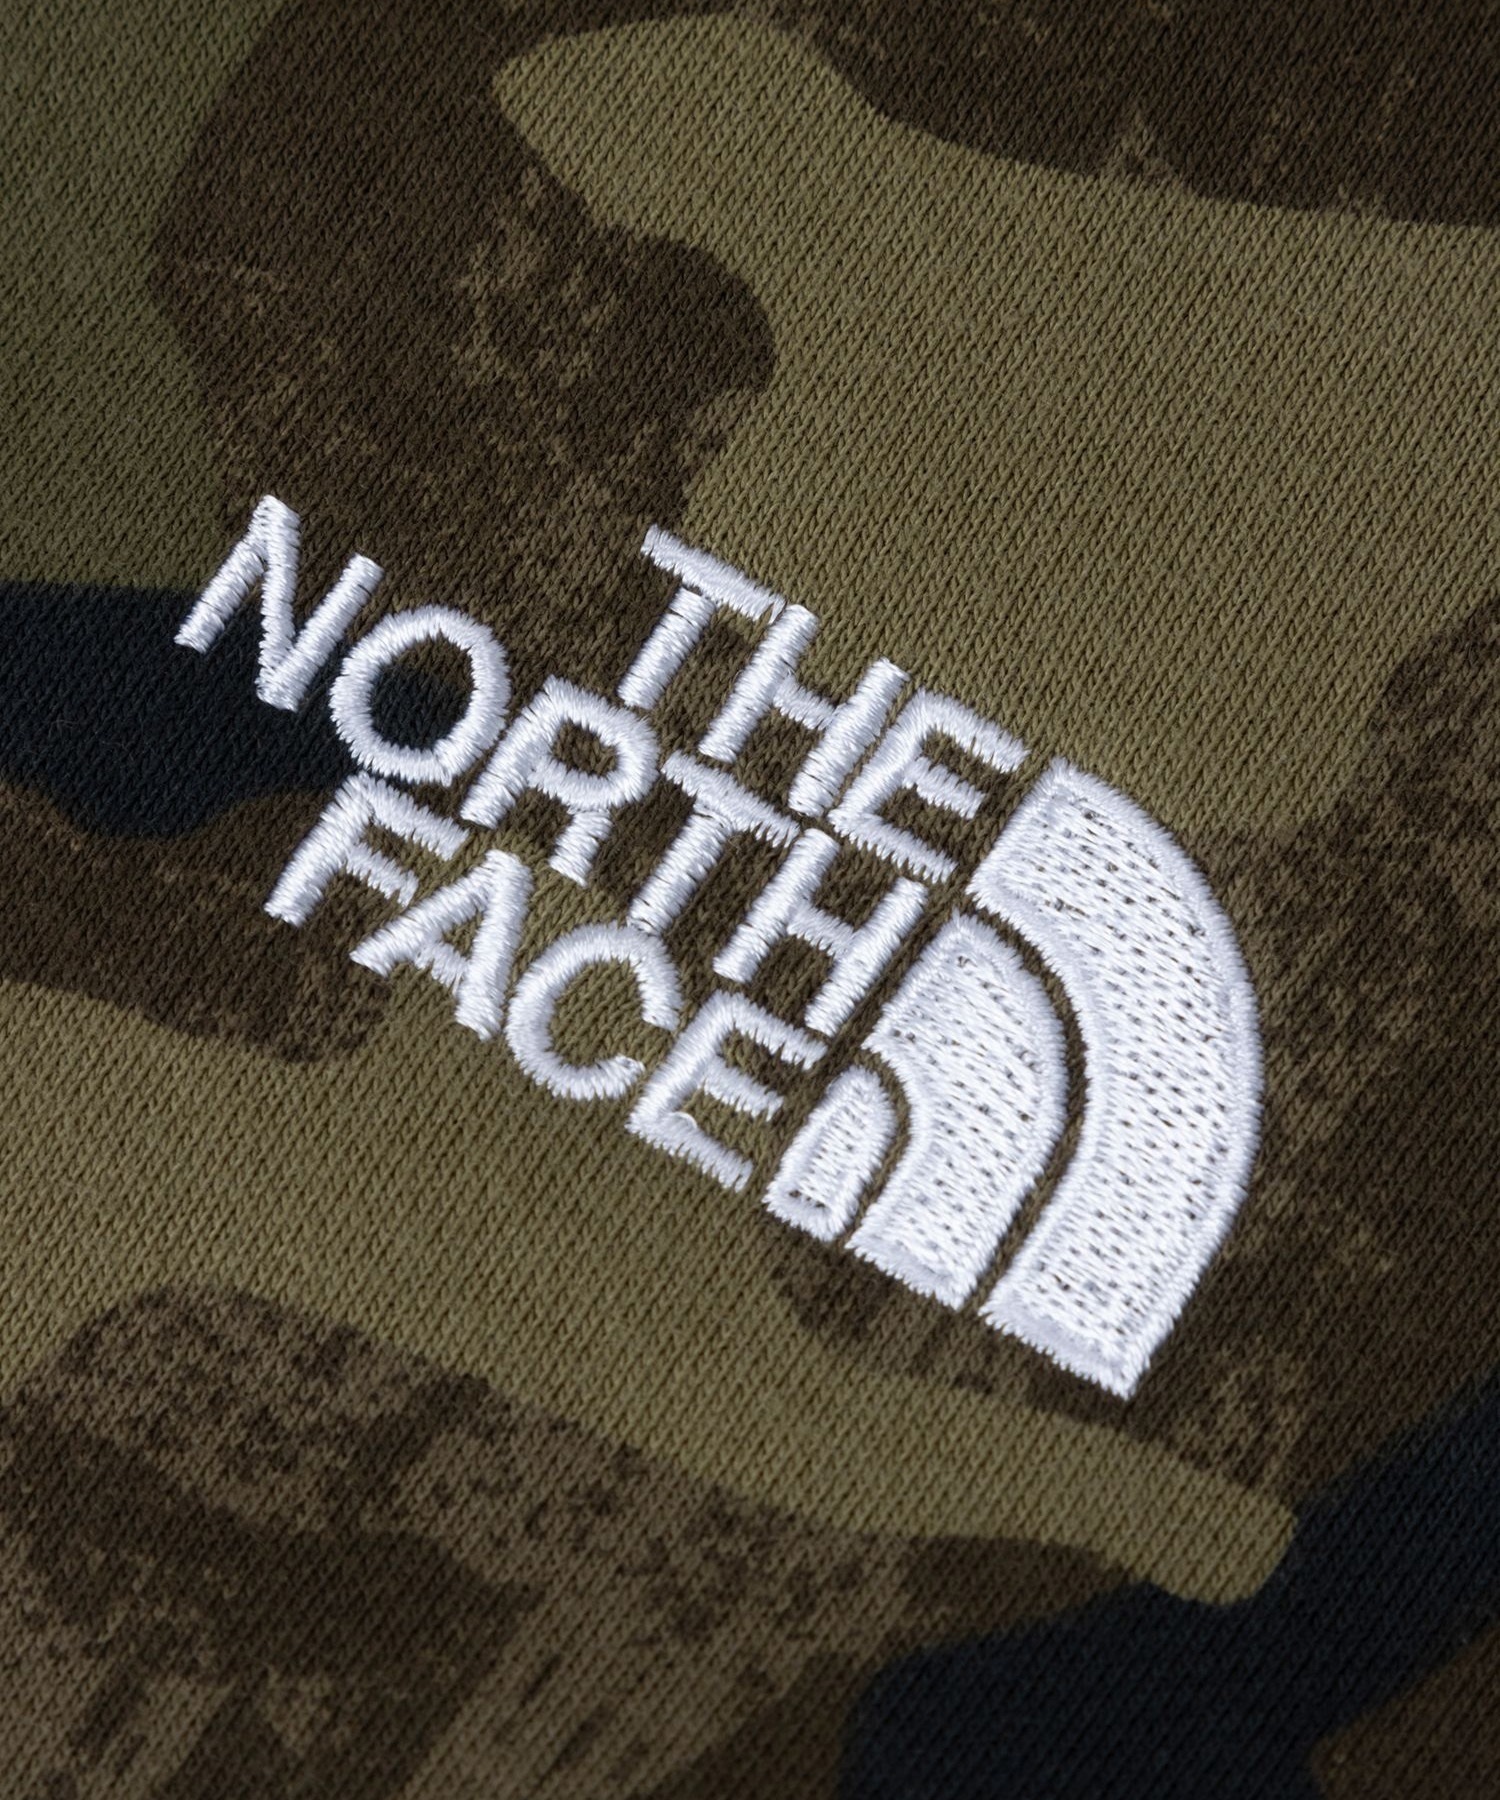 THE NORTH FACE/ザ・ノース・フェイス ノベルティリアビューフルジップフーディ メンズ パーカー ジップアップ 裏起毛 迷彩柄 カモフラージュ柄 NT62131(TF-S)